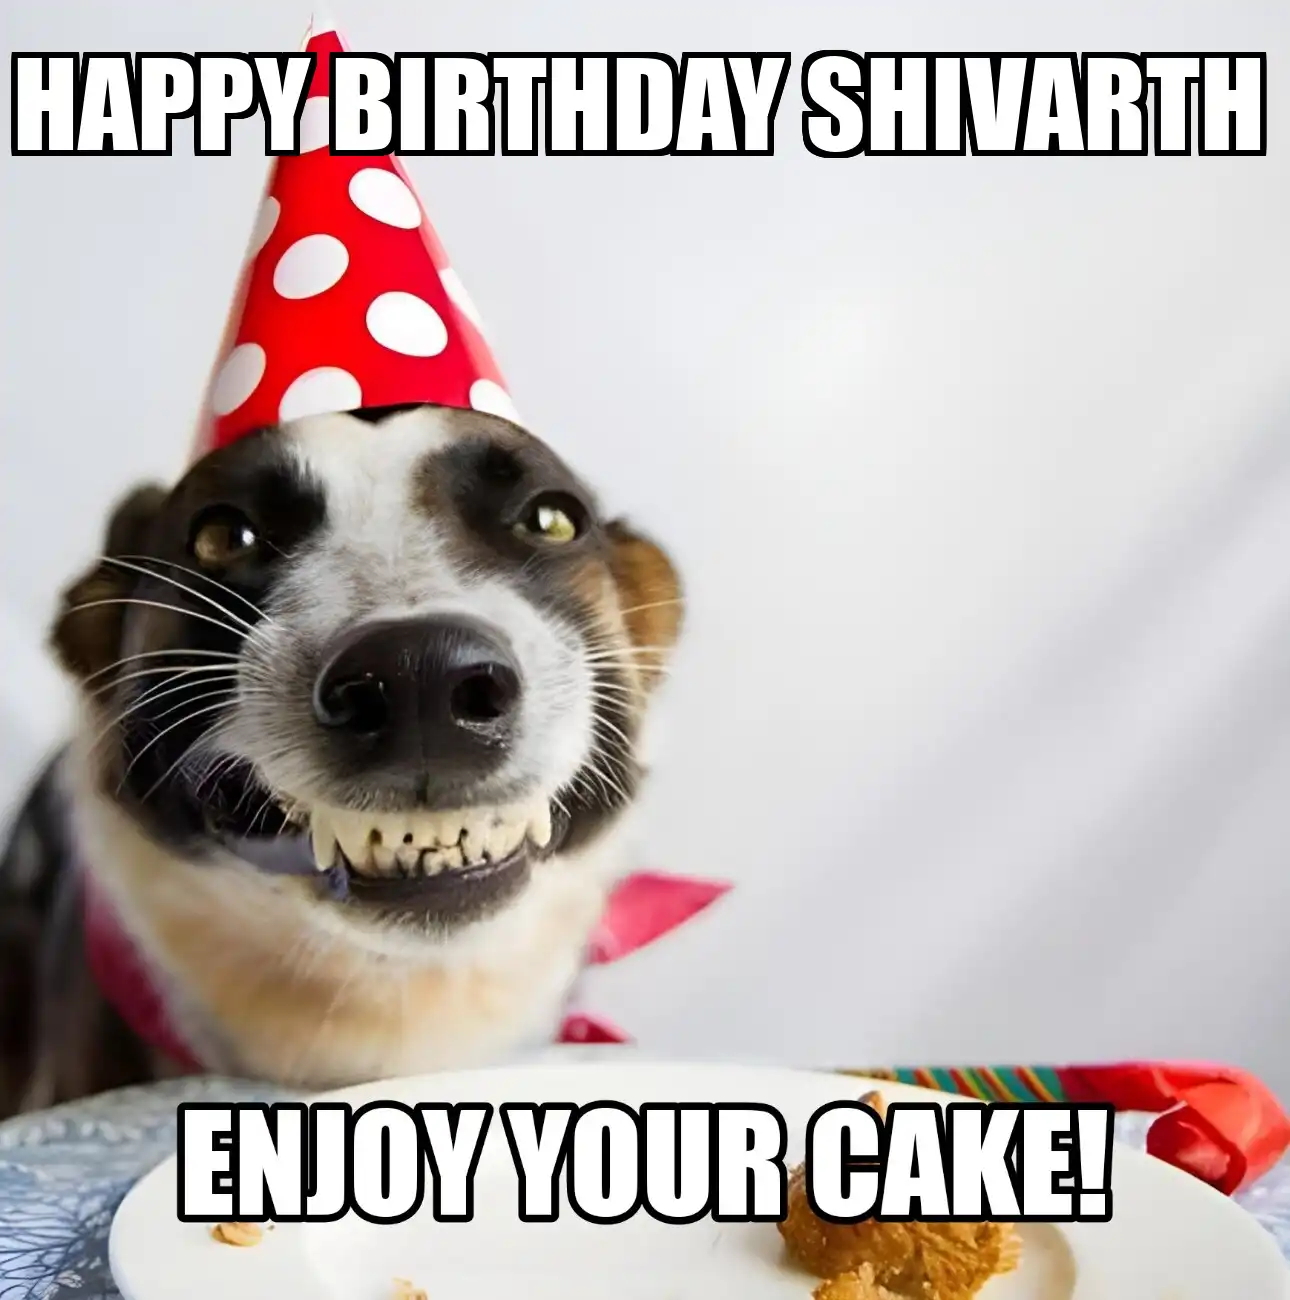 Happy Birthday Shivarth Enjoy Your Cake Dog Meme